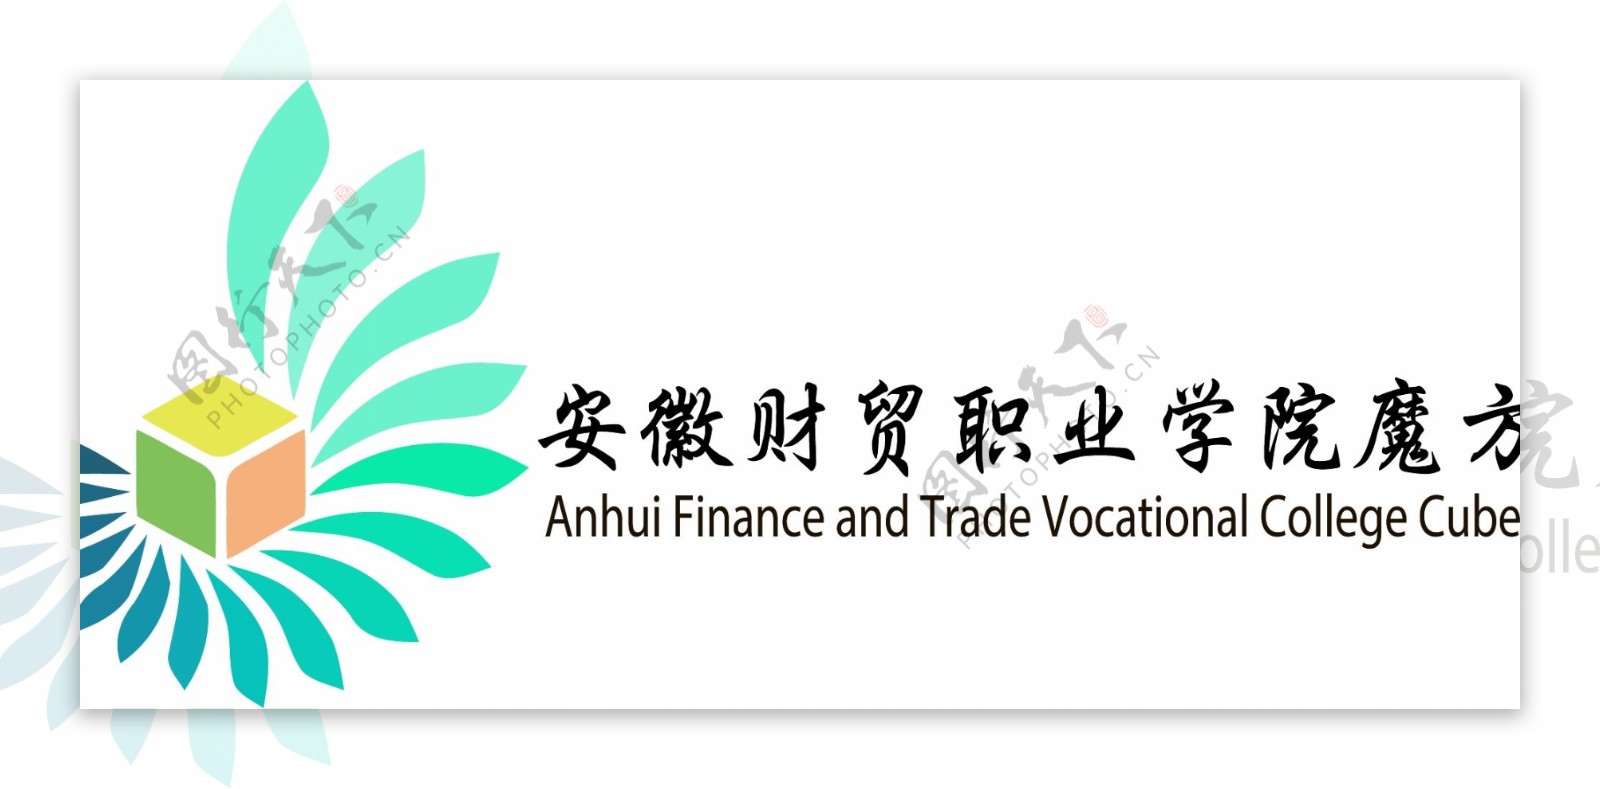 安财贸魔方协会logo